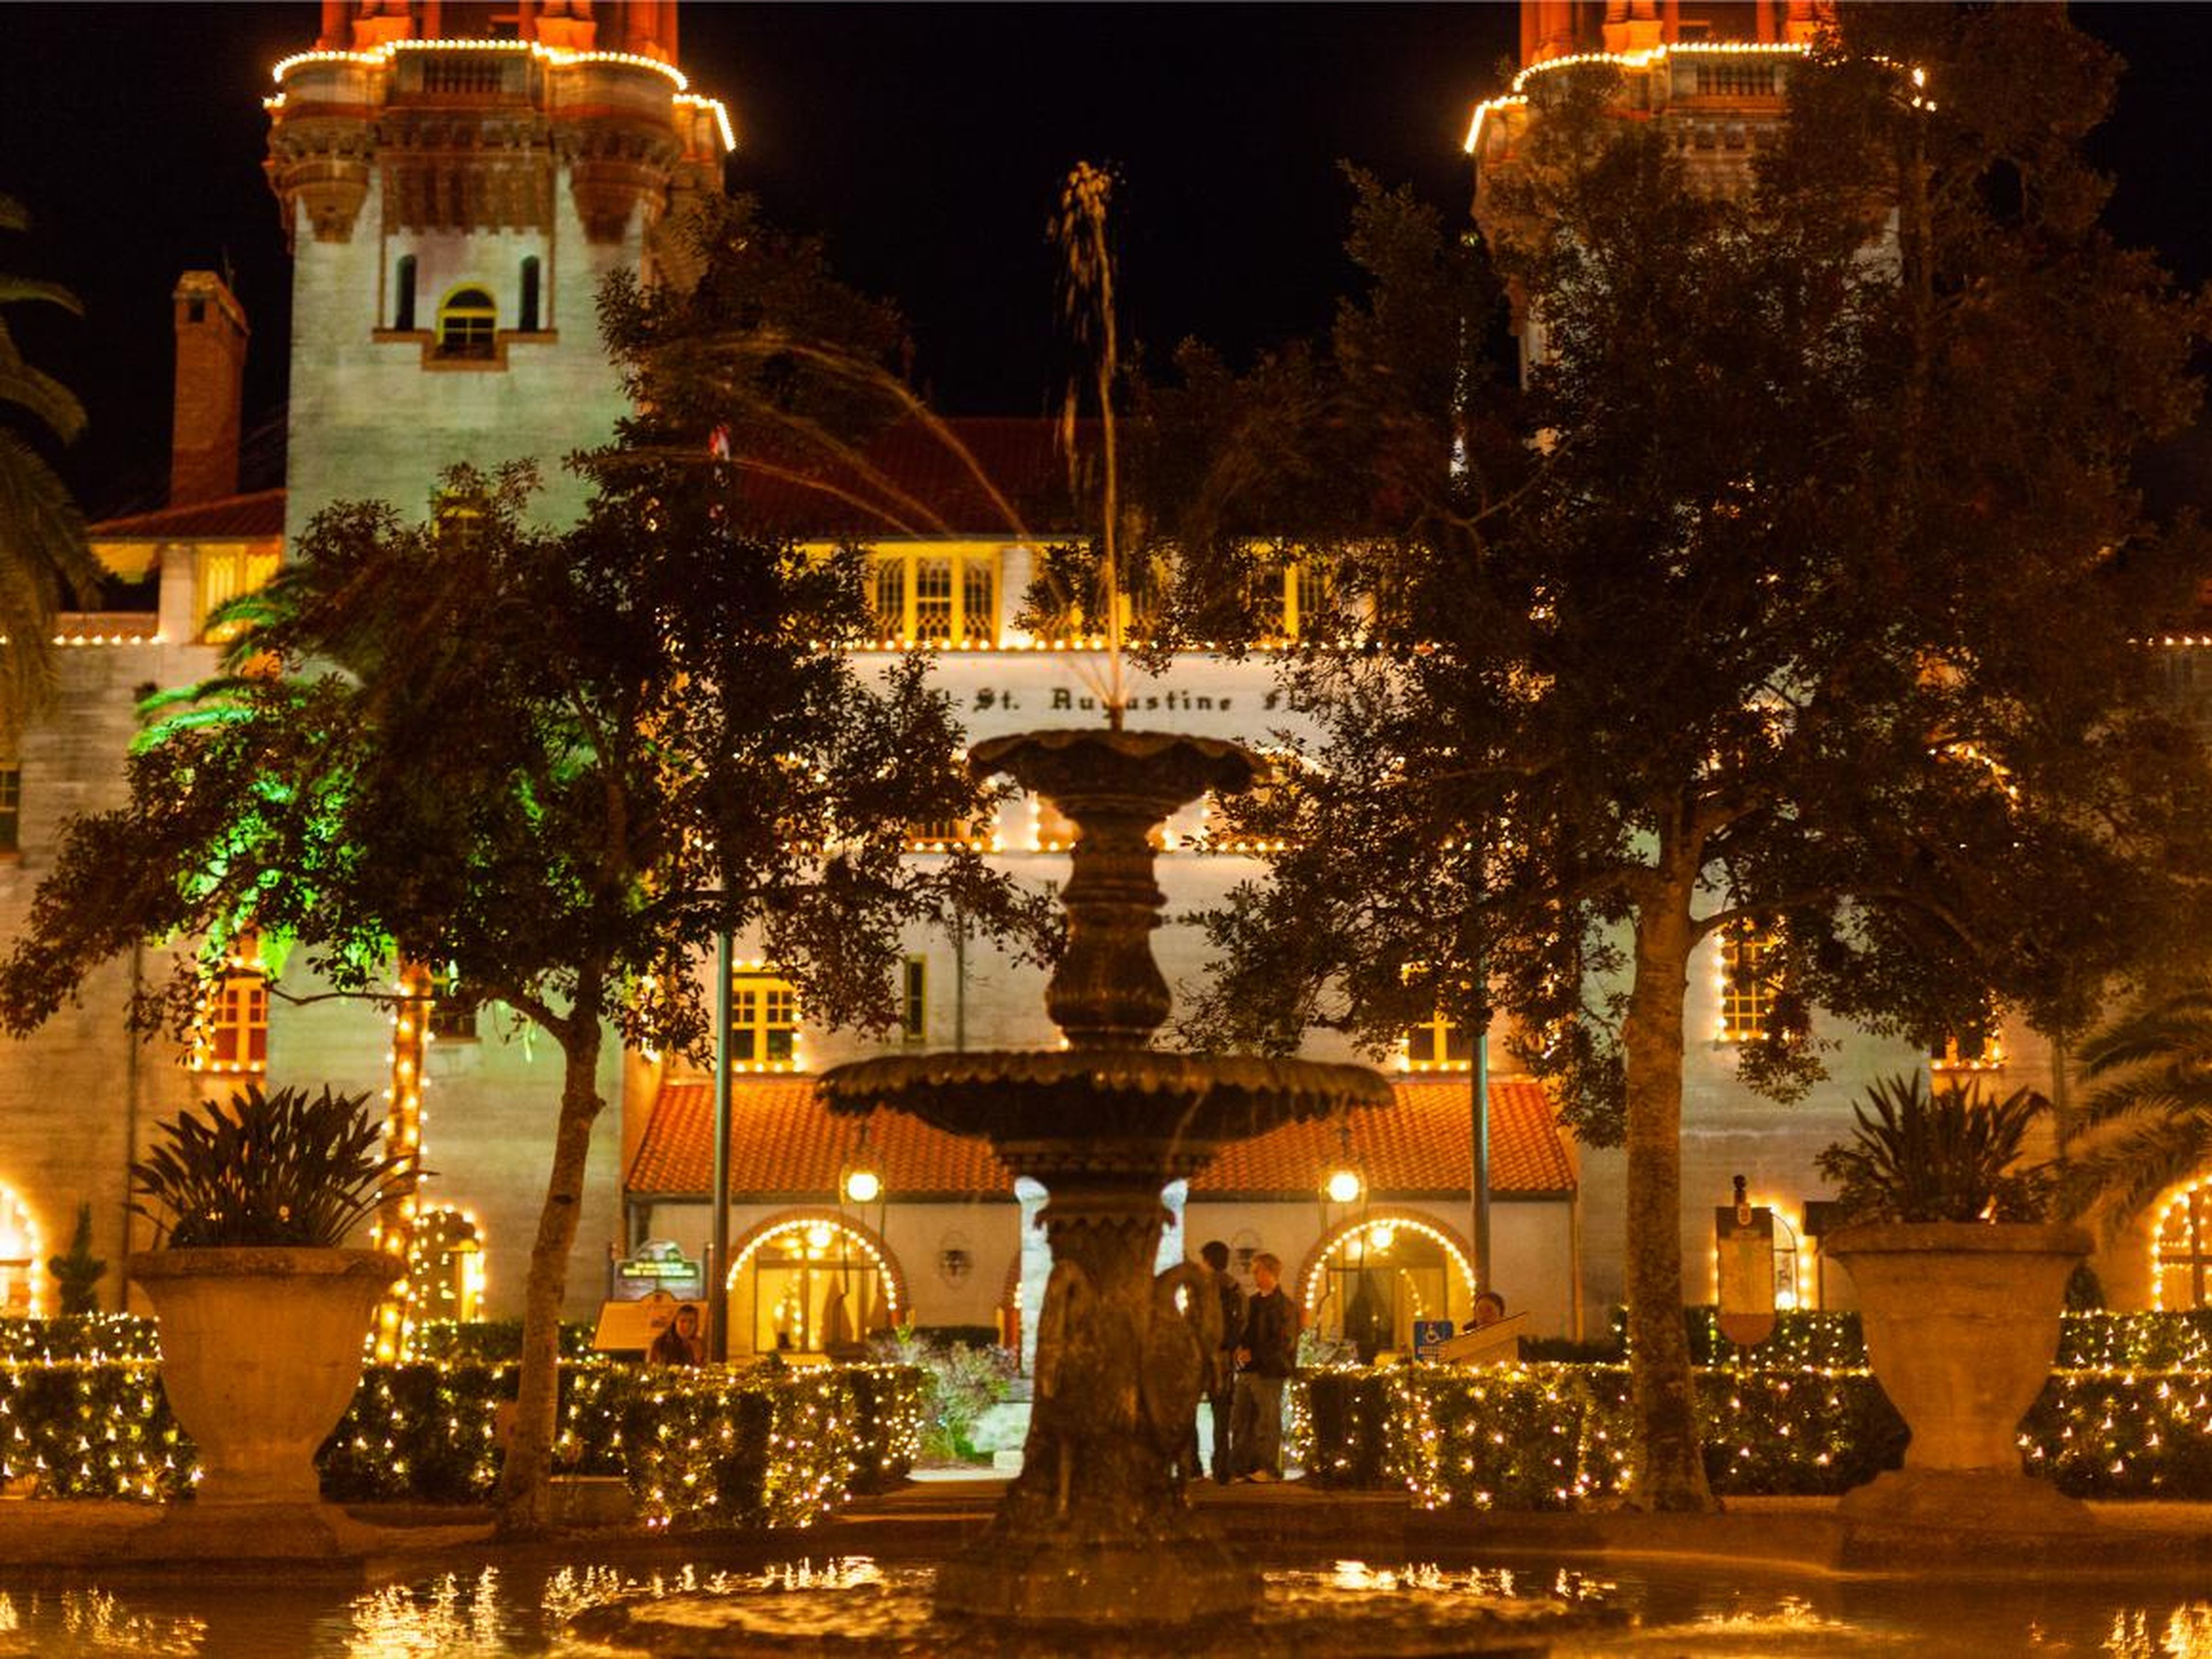 El Ayuntamiento y el Museo Lightner iluminados para las Noches de luces anuales en San Agustín, Florida.